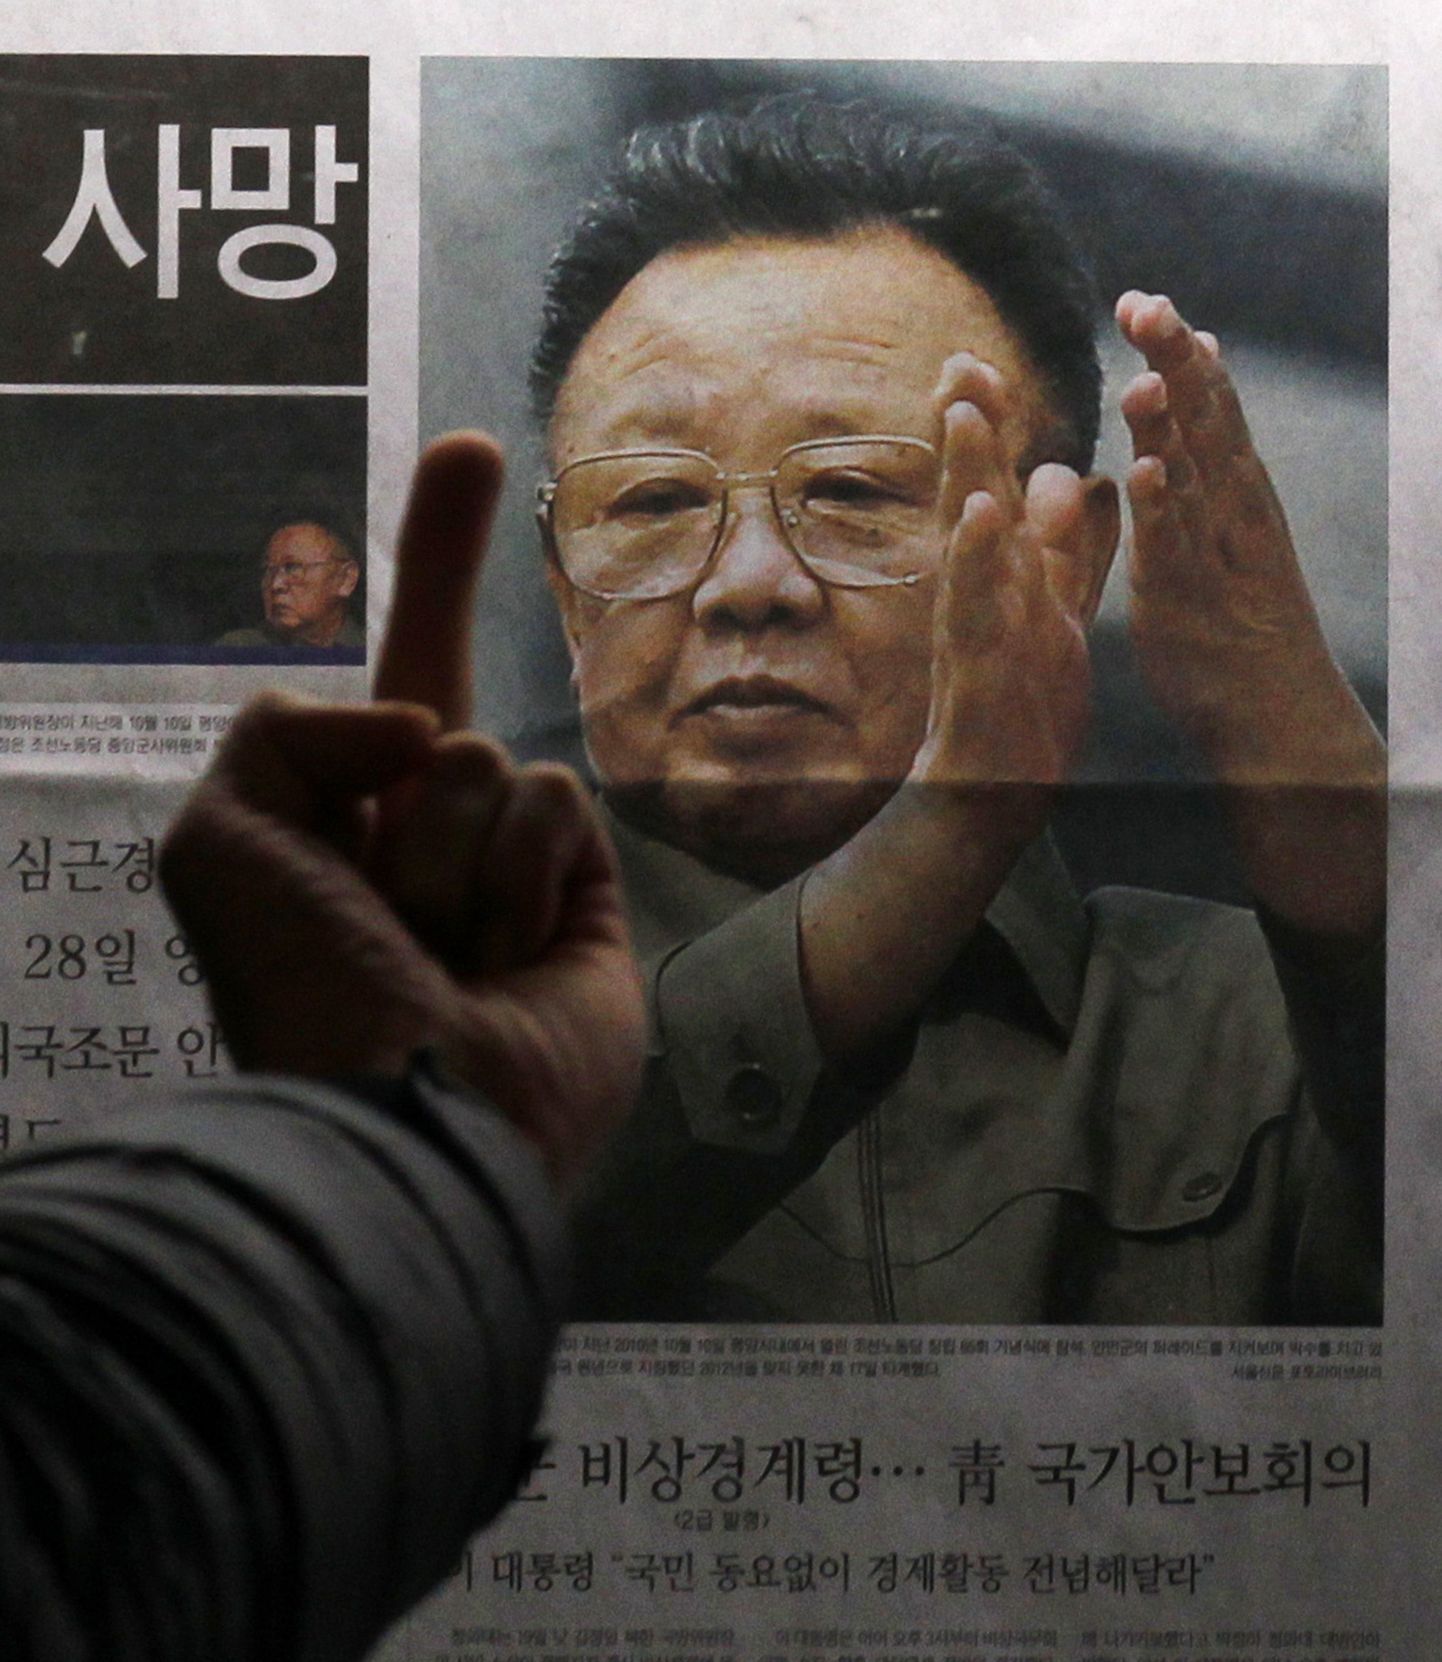 Põhja-Korea diktaator Kim Jong-il mõrvati?